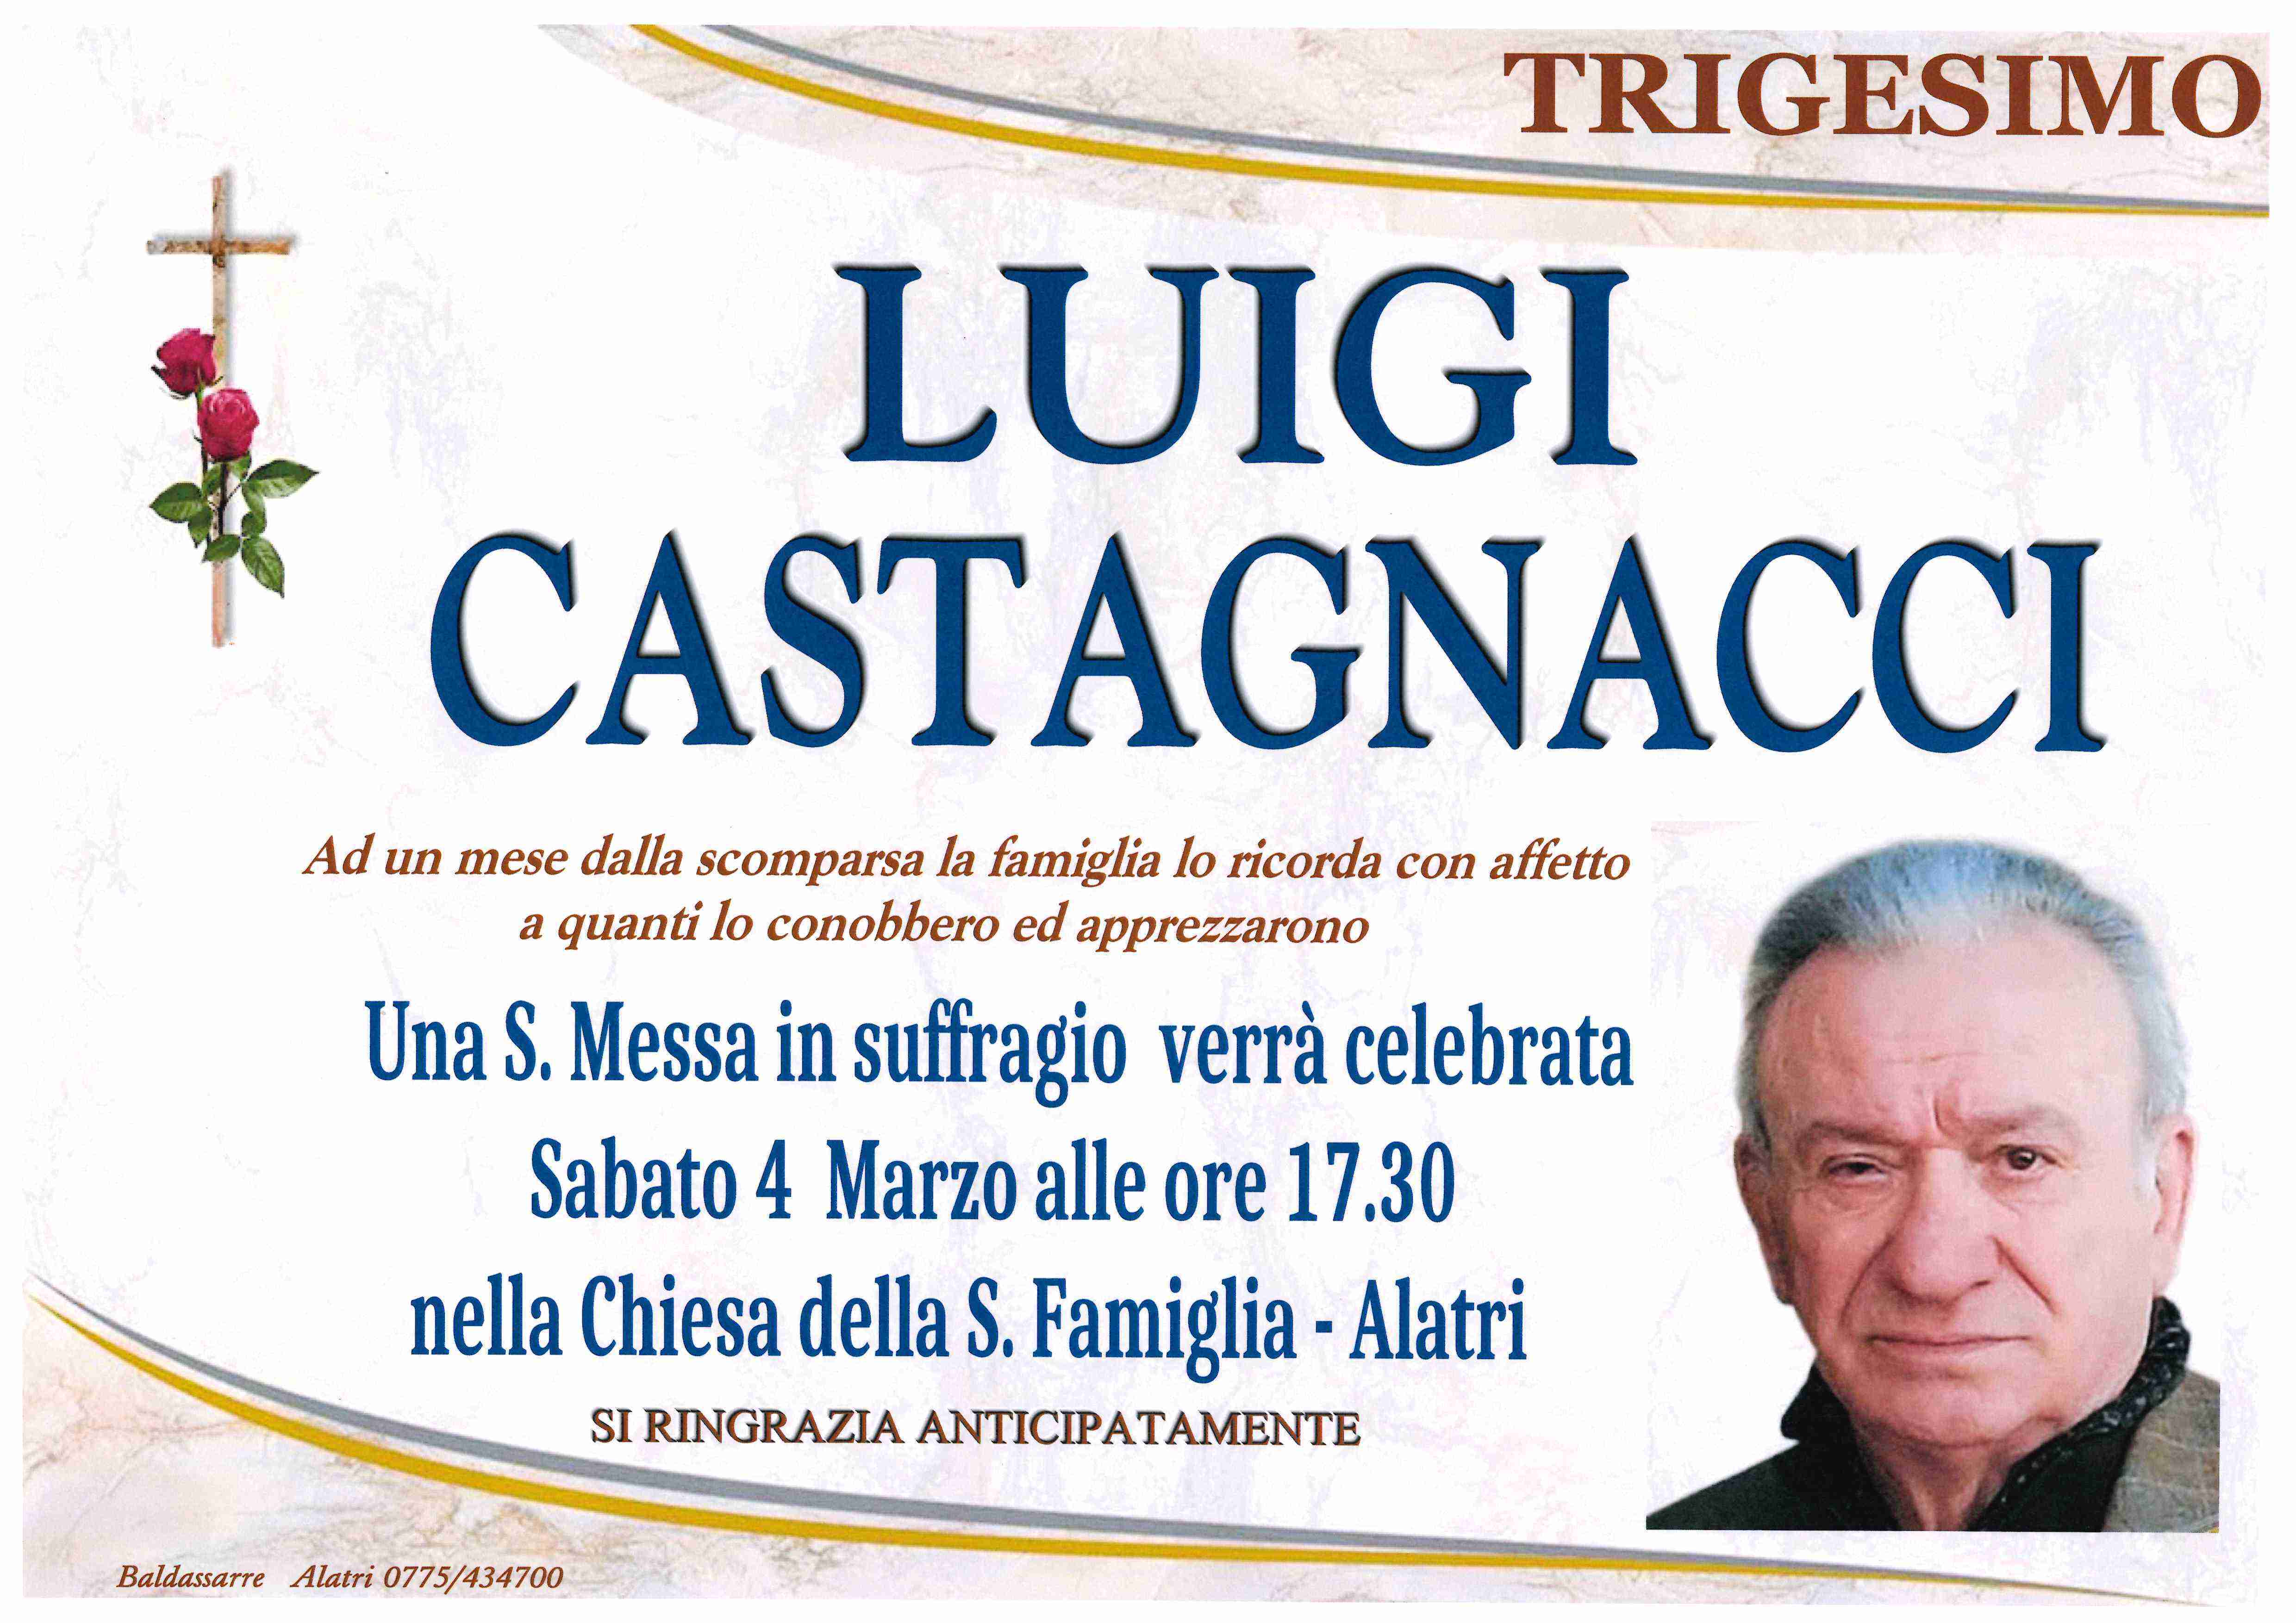 Luigi Castagnacci